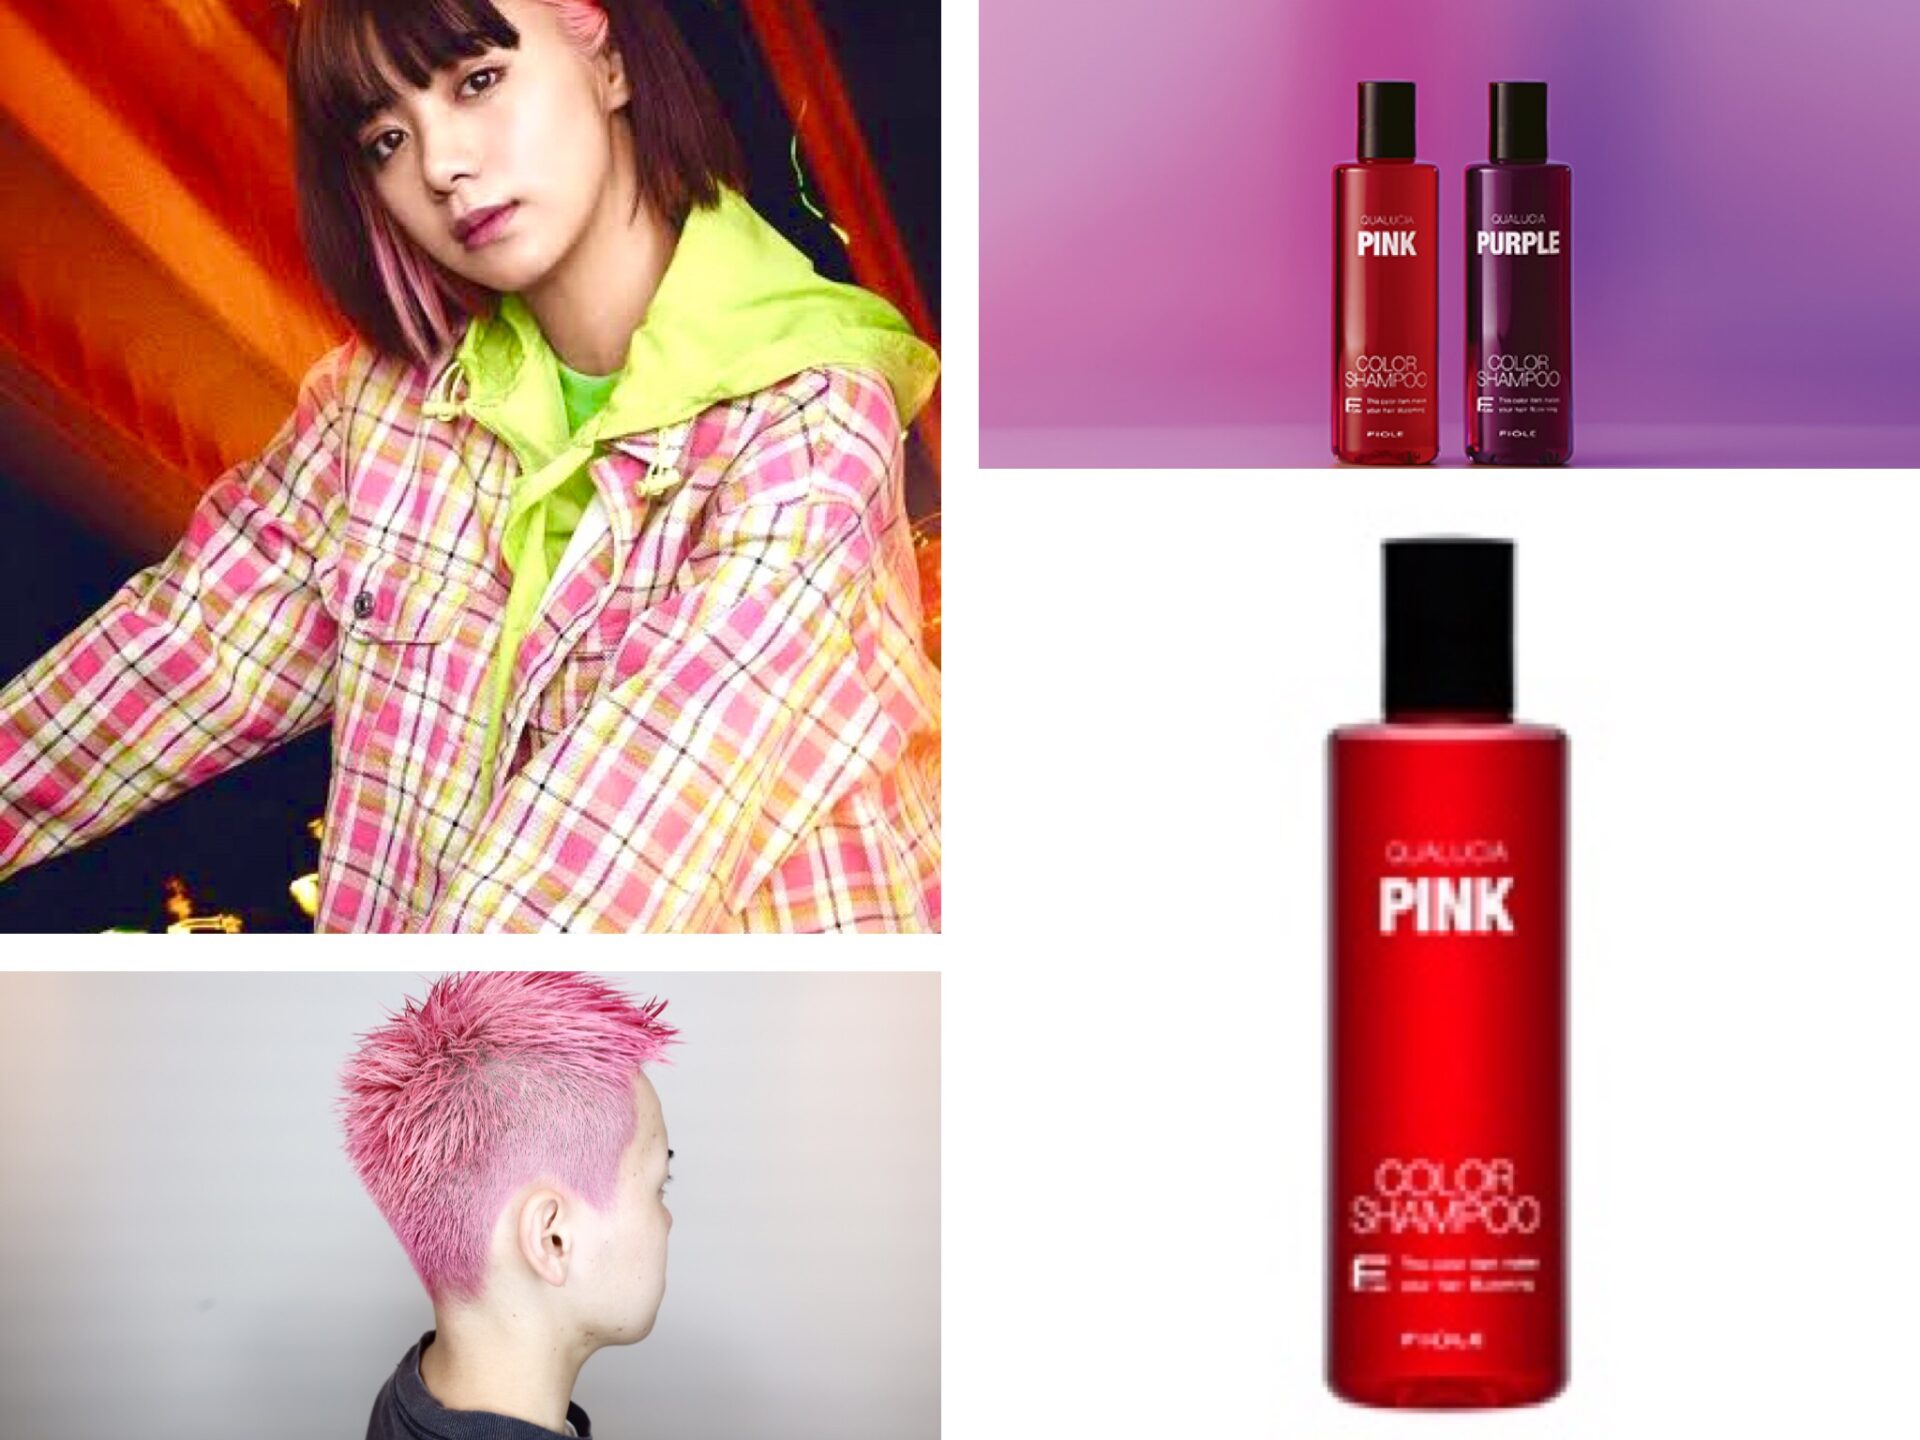 ピンクのカラーシャンプーの中で圧倒的に1番濃いヤツはコレ 超おすすめ フィヨーレ クオルシア カラーシャンプー 髪トレブログ